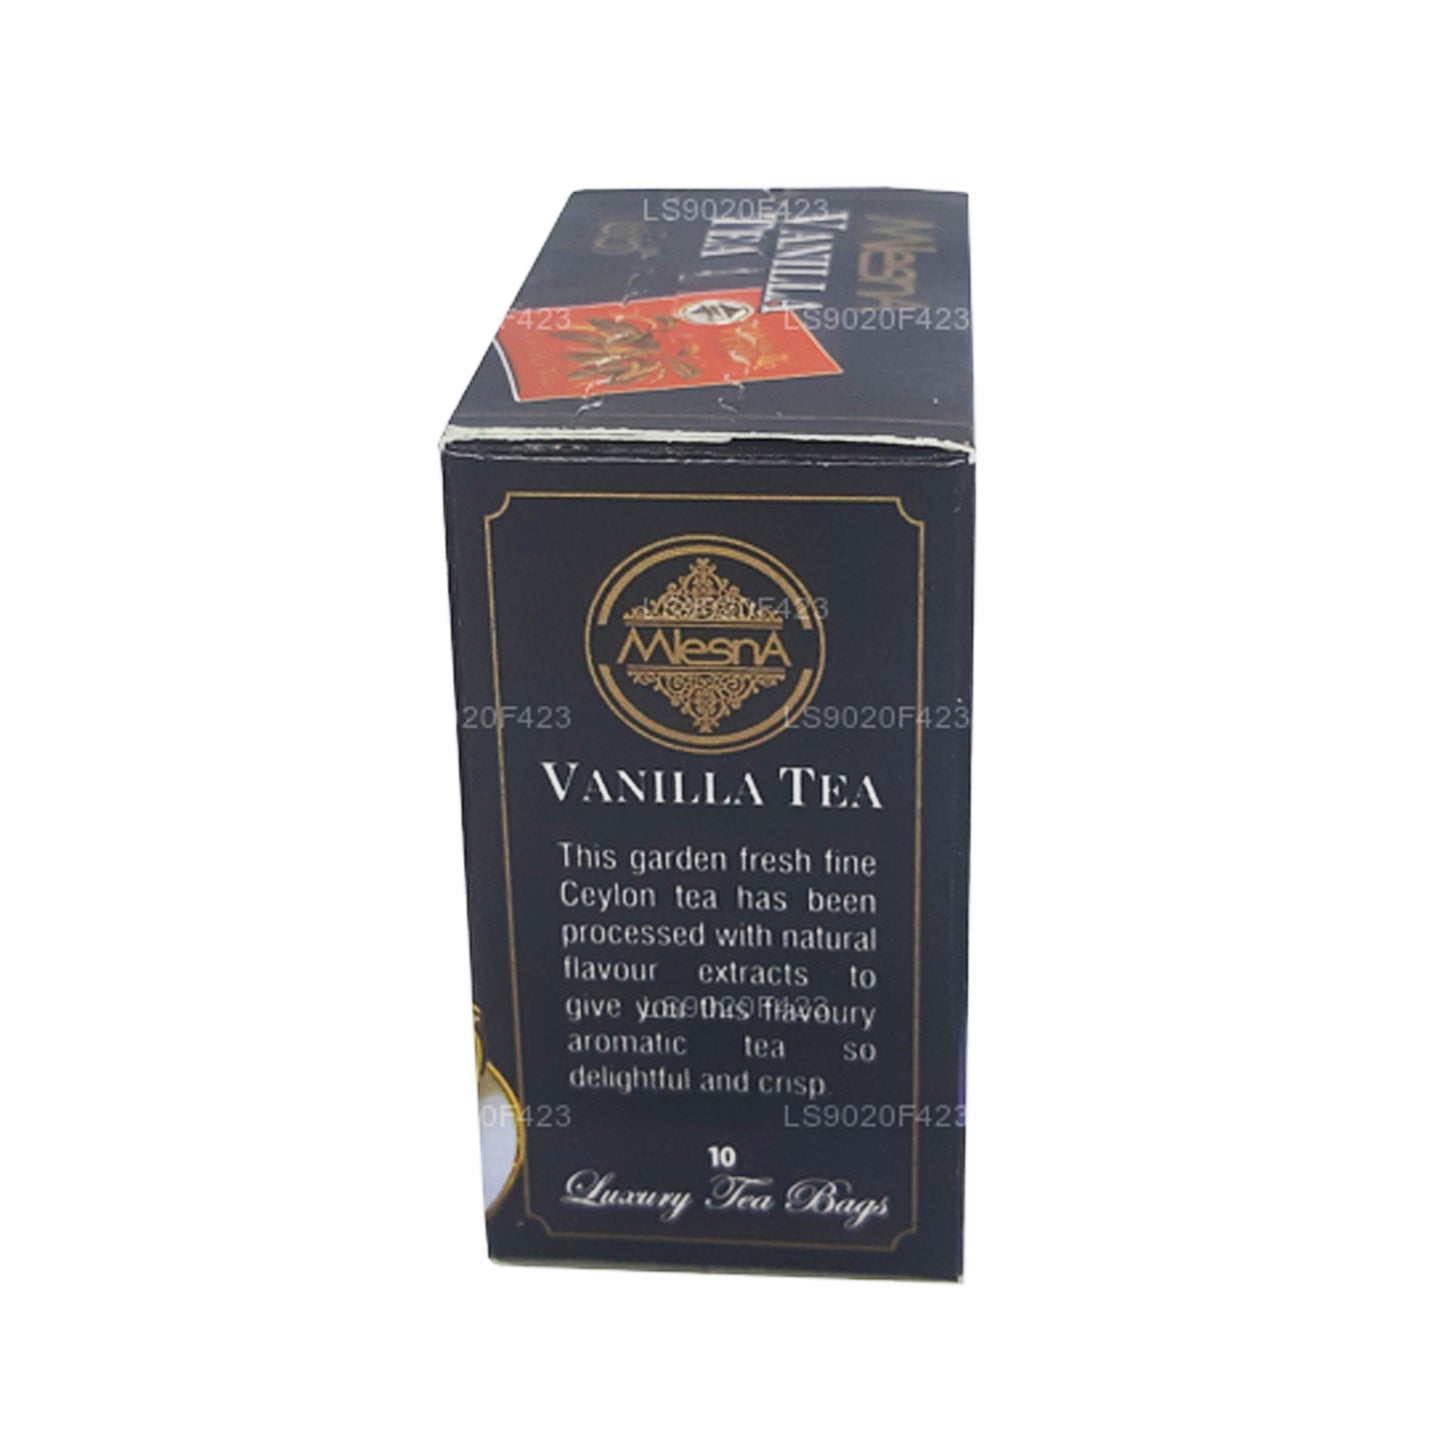 Mlesna Vanilkový čaj (20g) 10 luxusních čajových sáčků